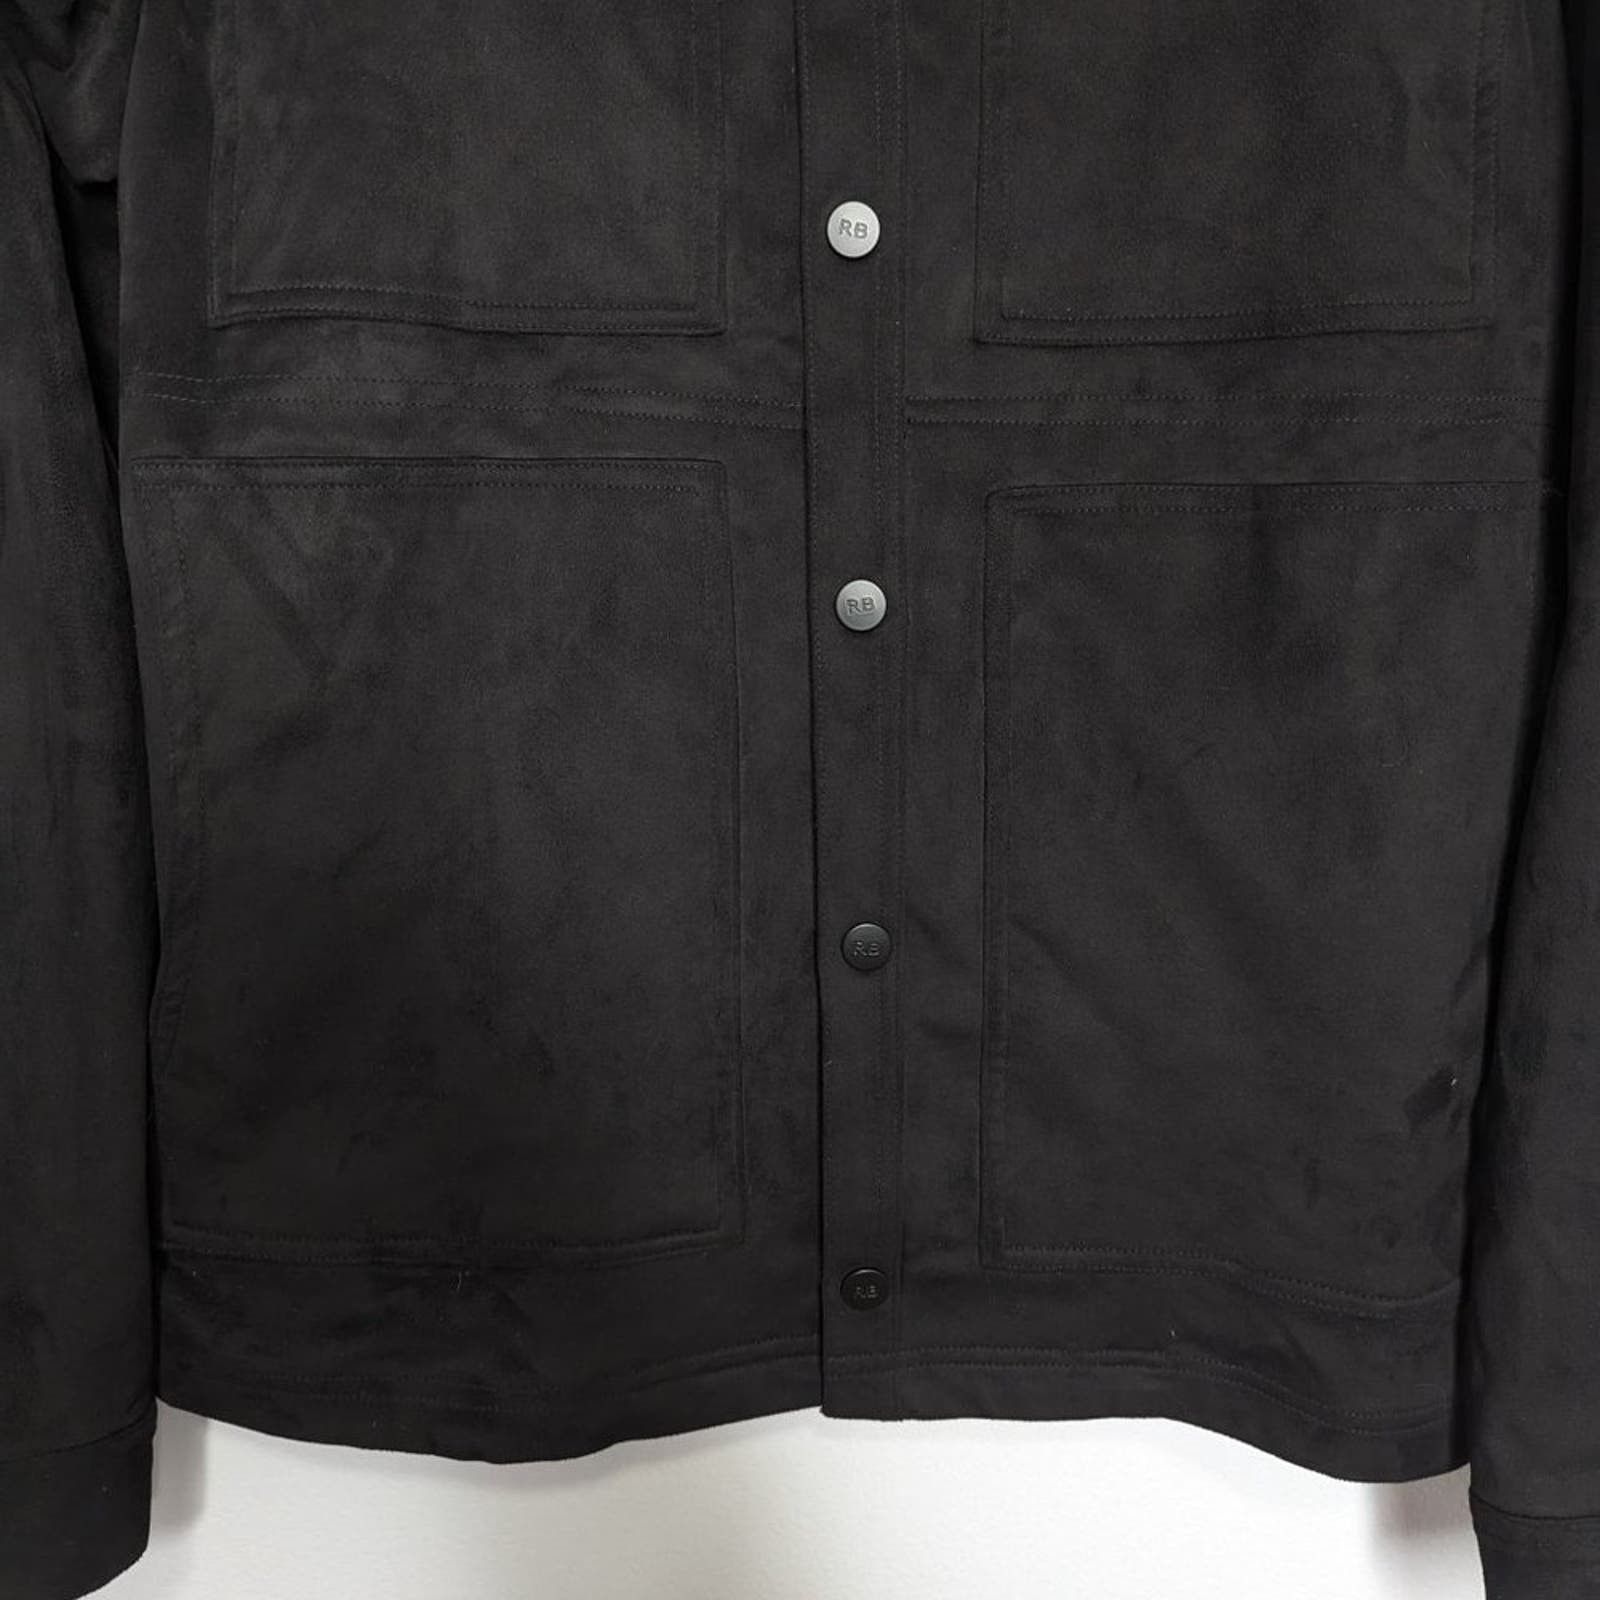 Robert Barakett Robert Barakett Black Renoir Denim Style Jacket Faux Suede S Size US S / EU 44-46 / 1 - 5 Thumbnail